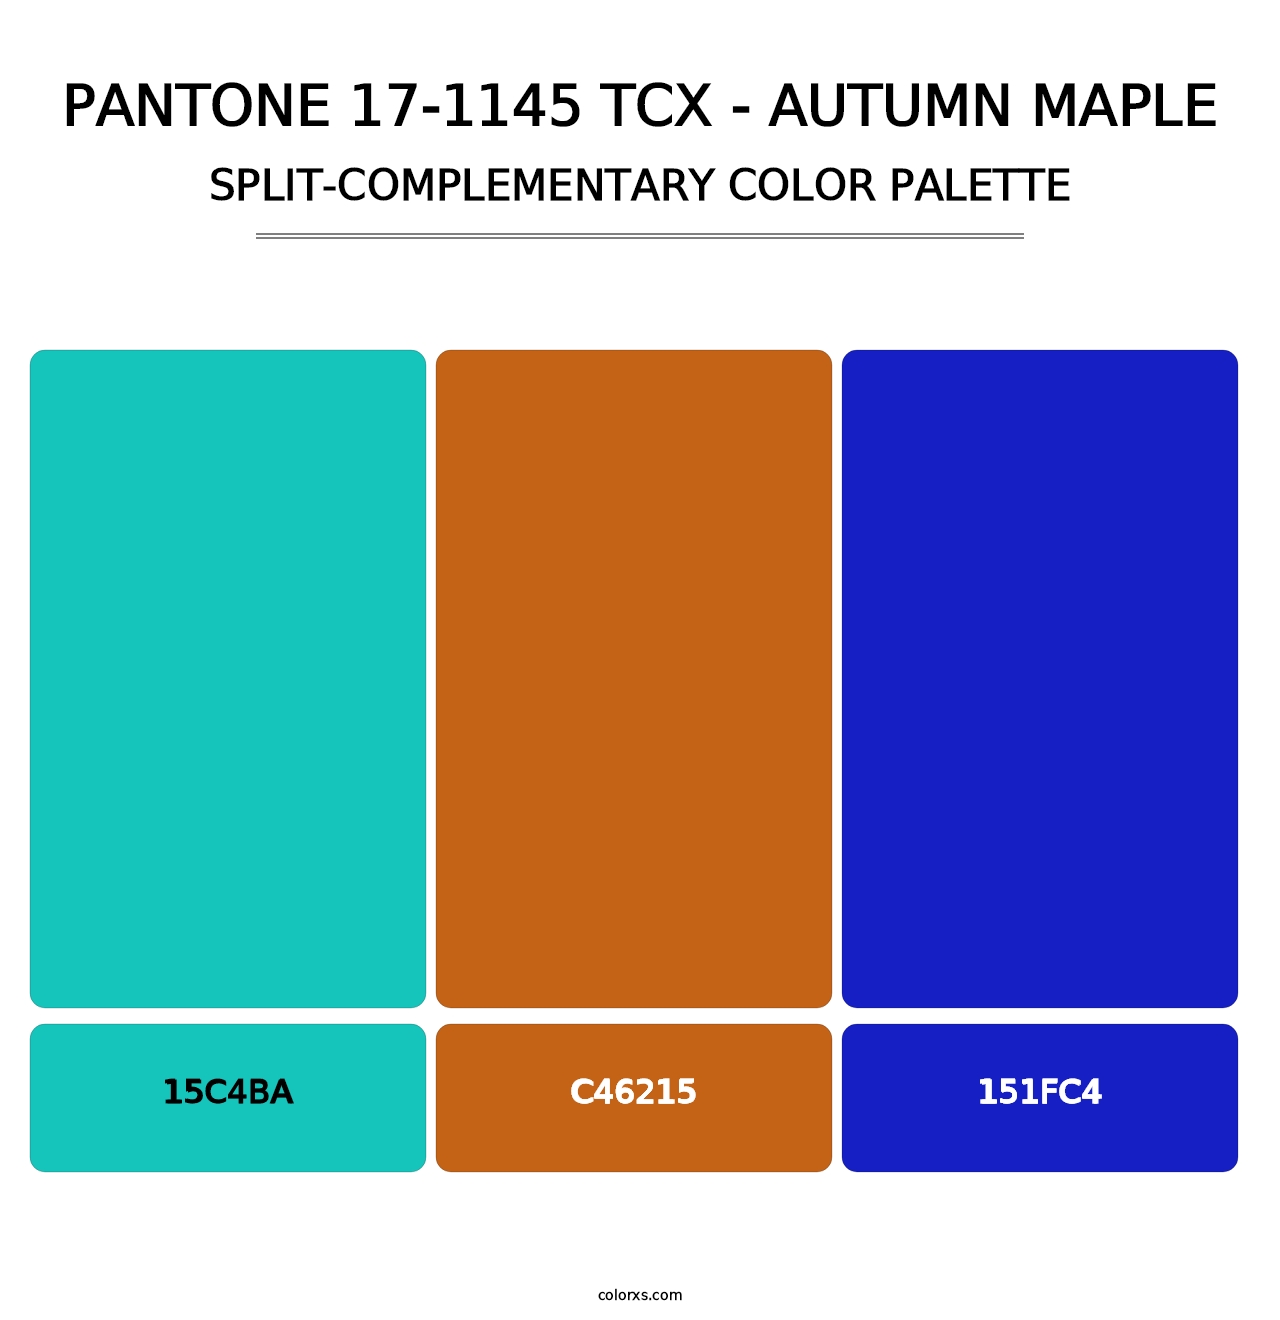 PANTONE 17-1145 TCX - Autumn Maple - Split-Complementary Color Palette